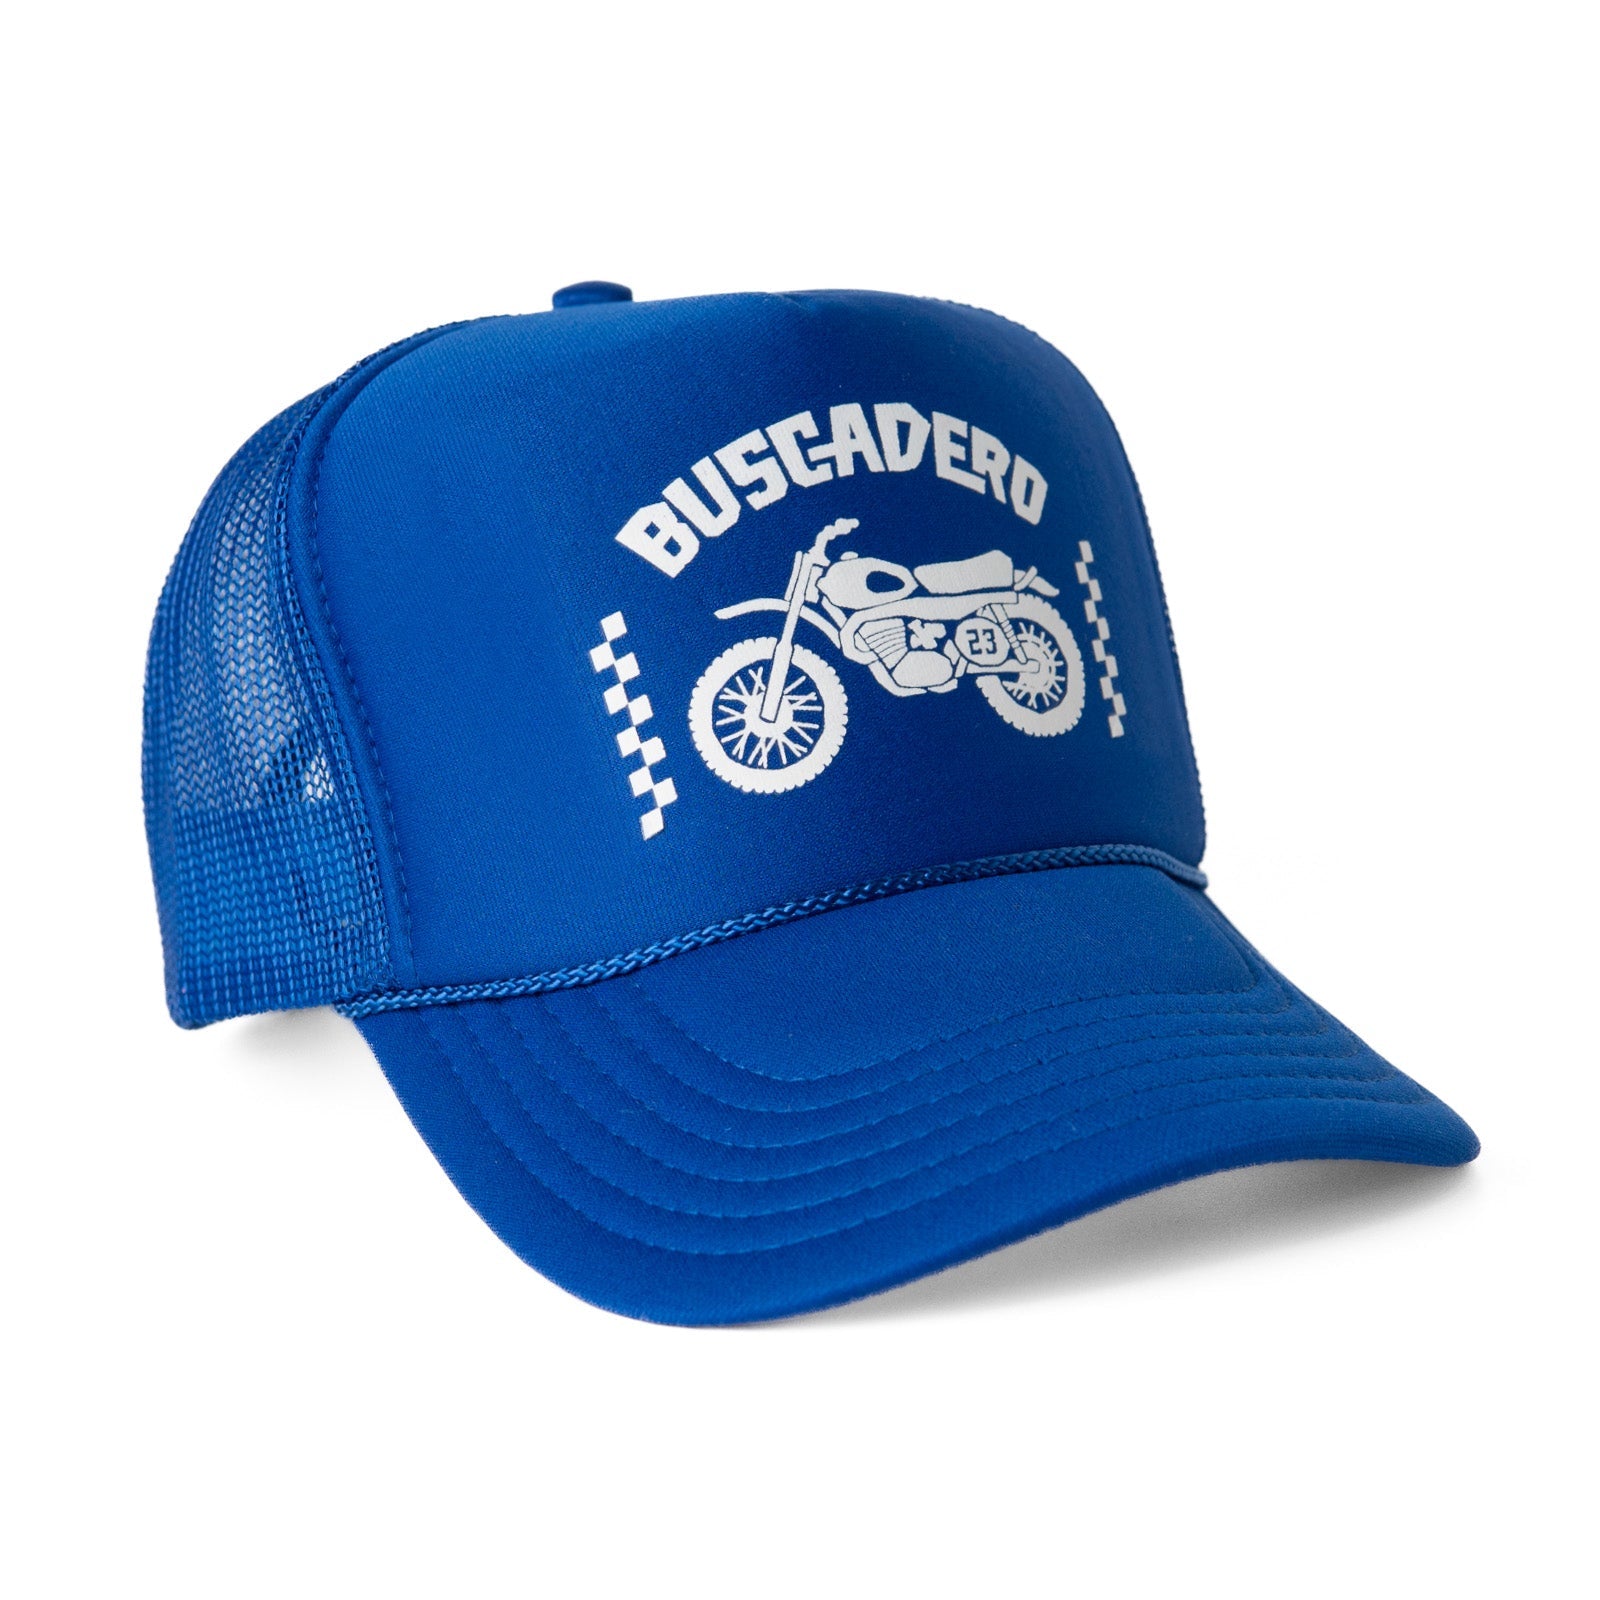 ‘74 Moto’ Foam Trucker Hat - Royal Blue - Buscadero Motorcycles